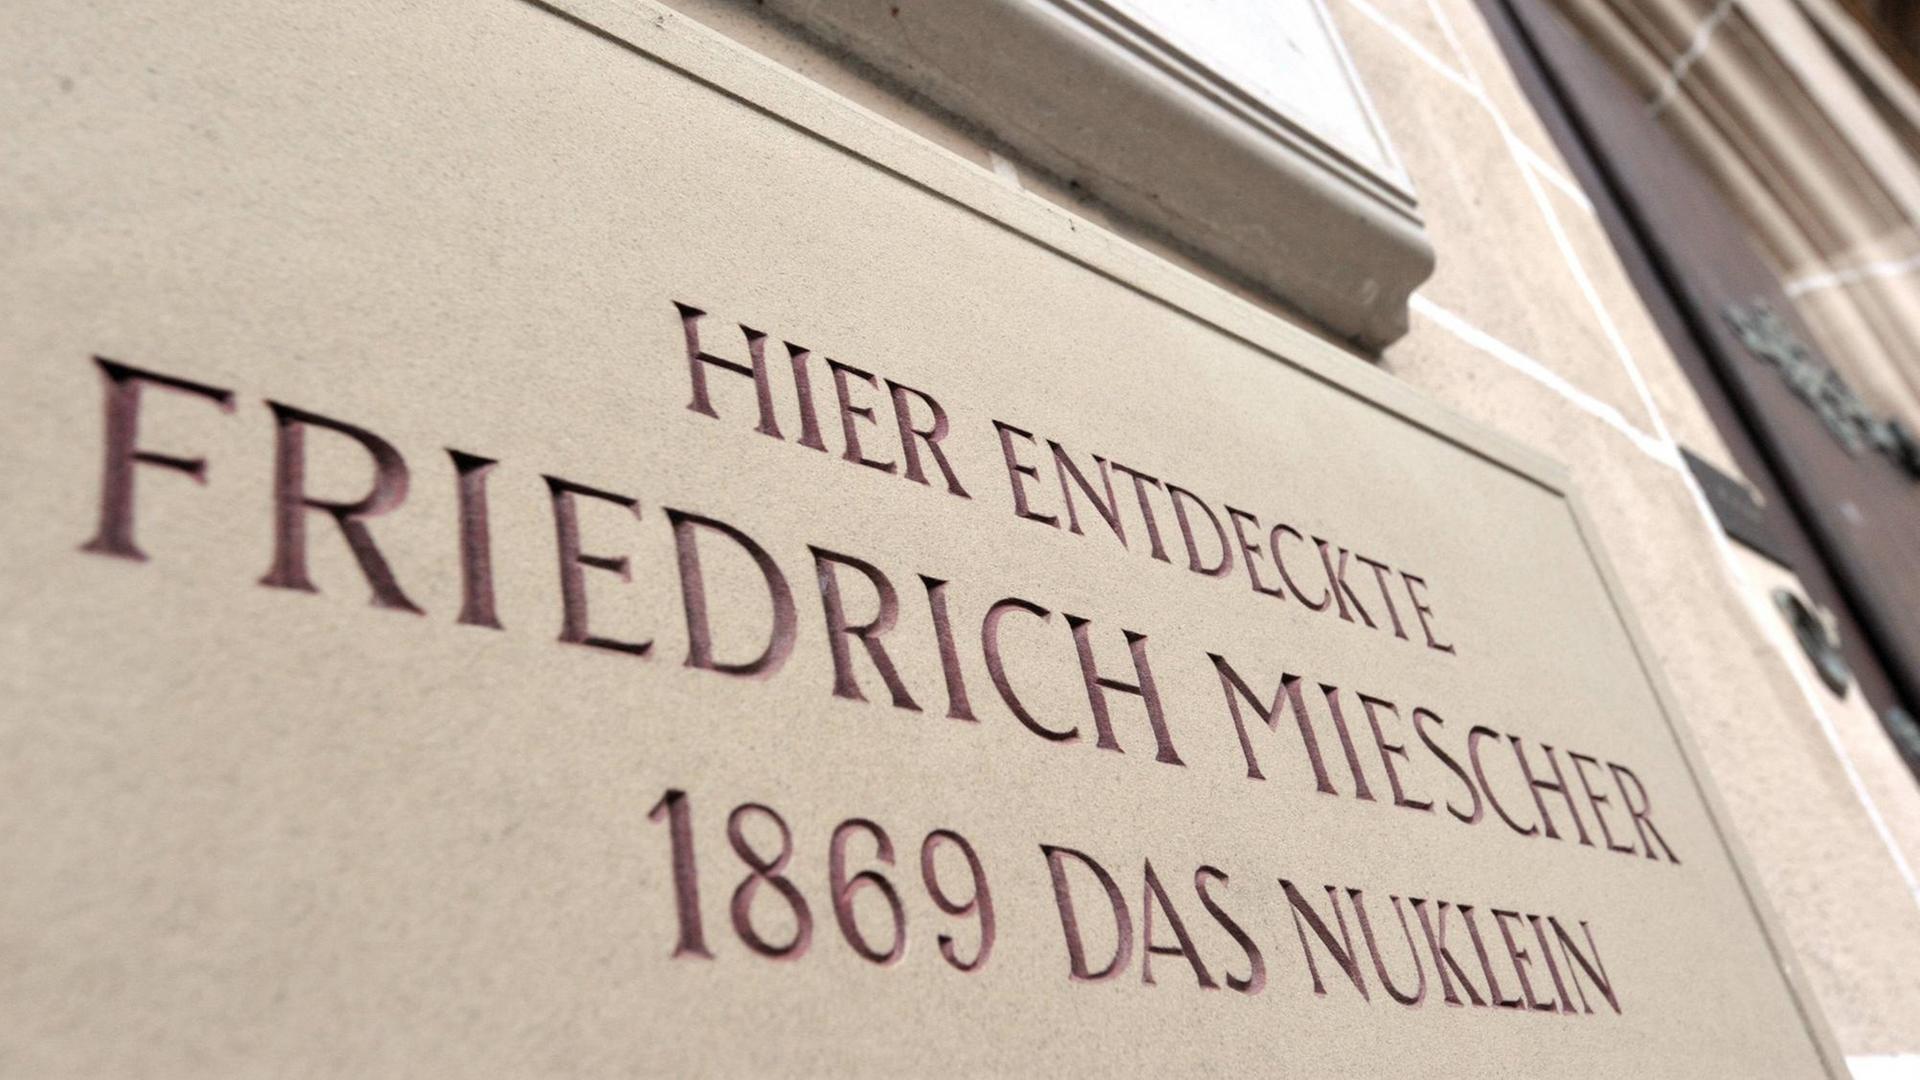 Hinweisschild auf Nuklein-Entdecker Friedrich Miescher am Tübinger Schlossberg